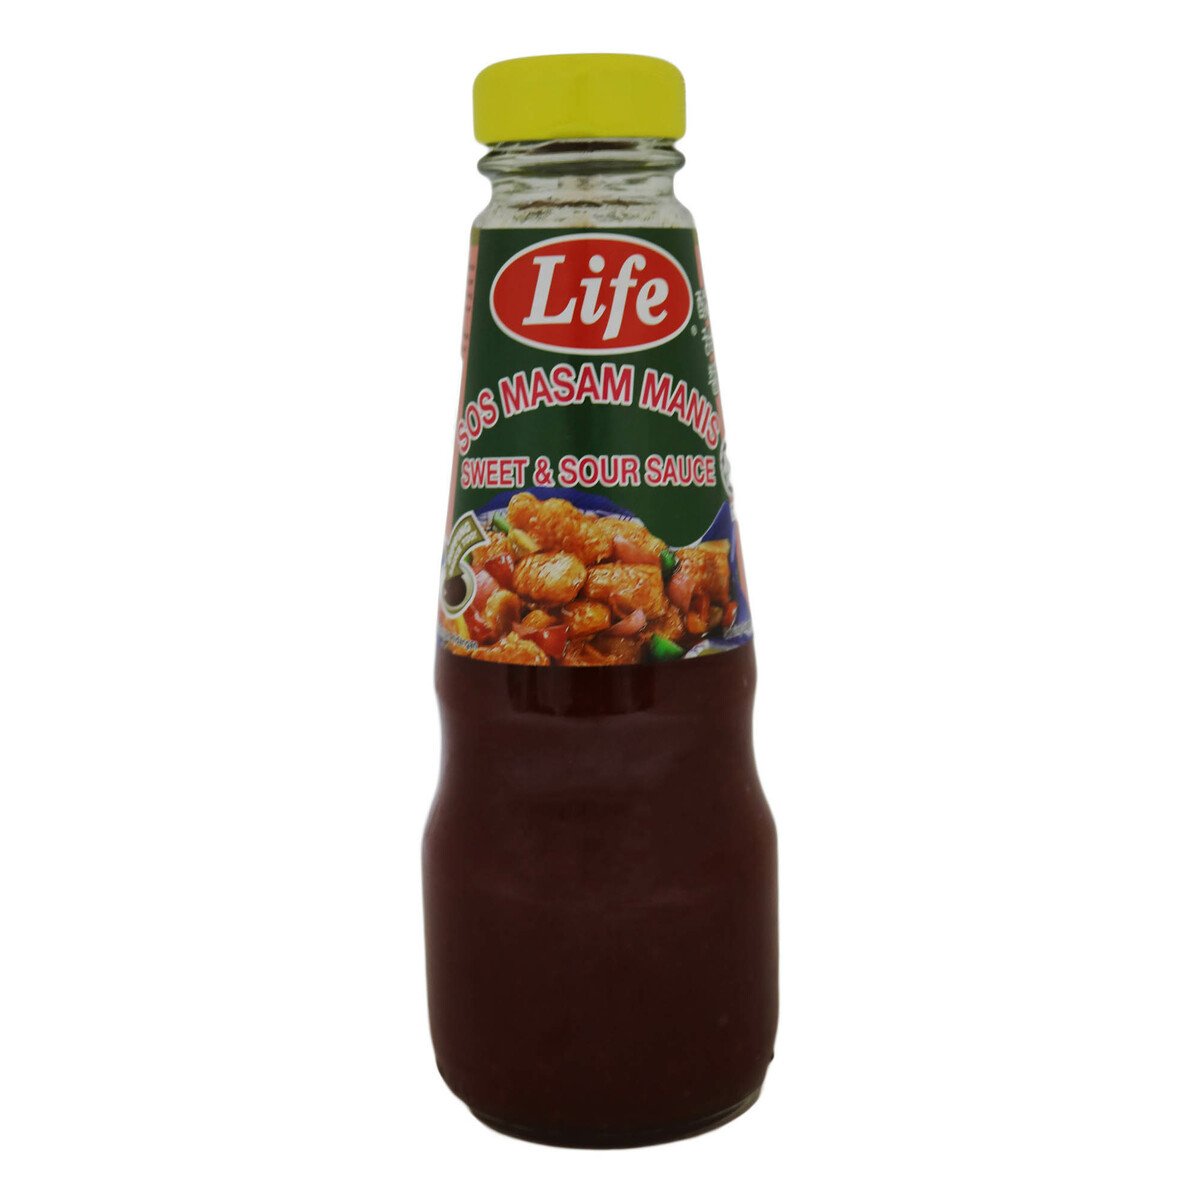 Life Sweet & Sour Sauce 250g